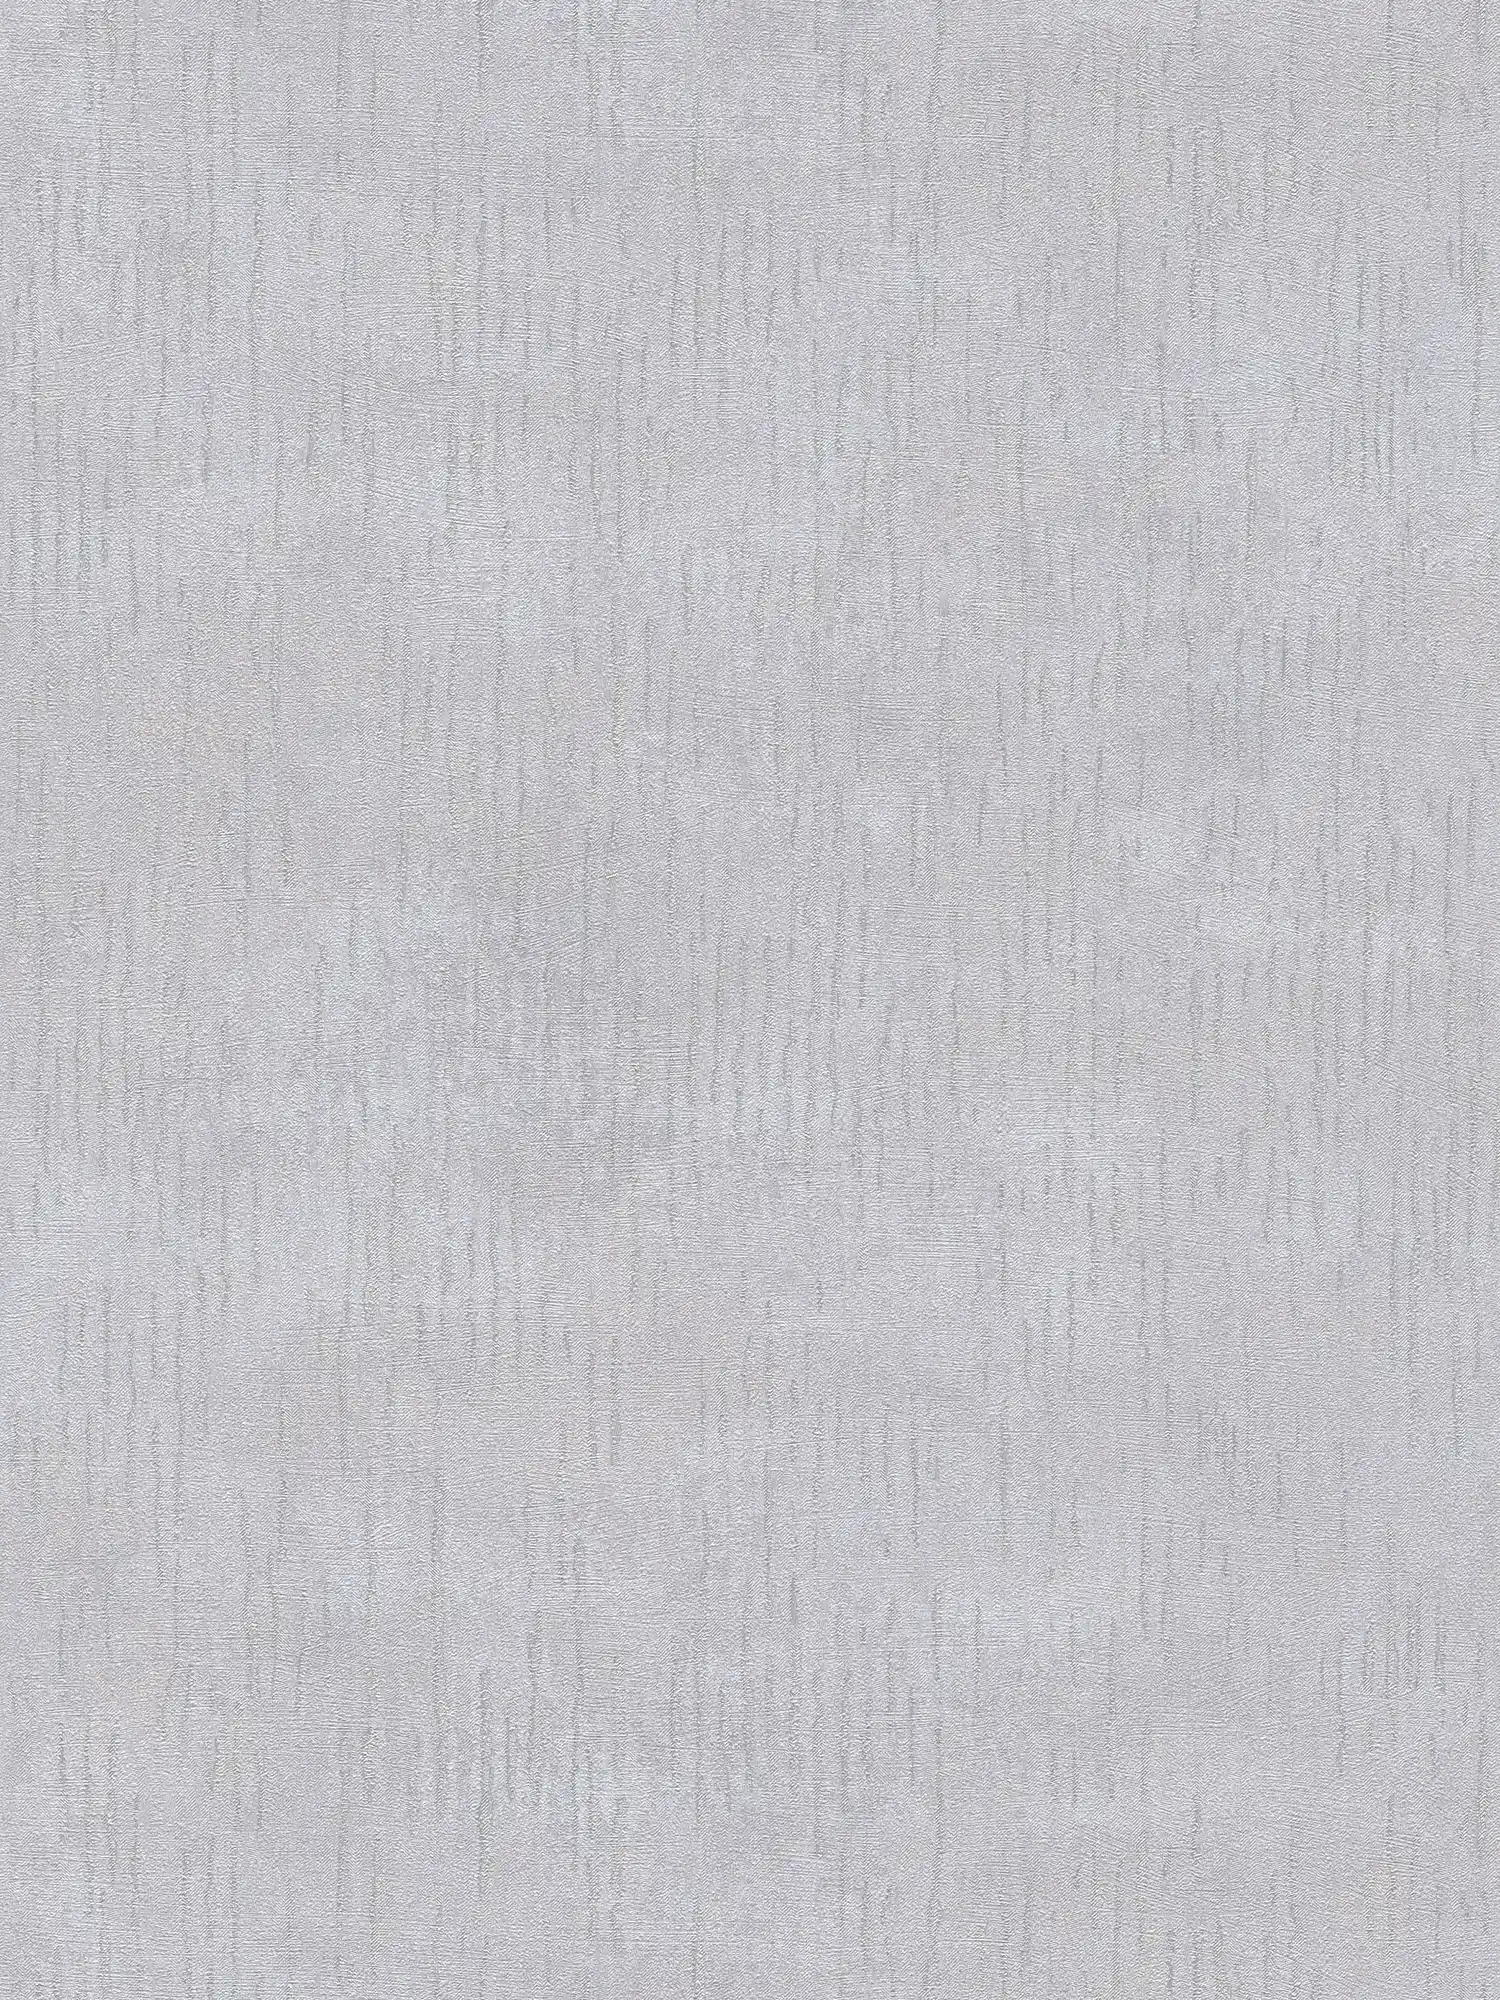 Papel pintado brillante estampado con diseño de estructura - gris, metálico
